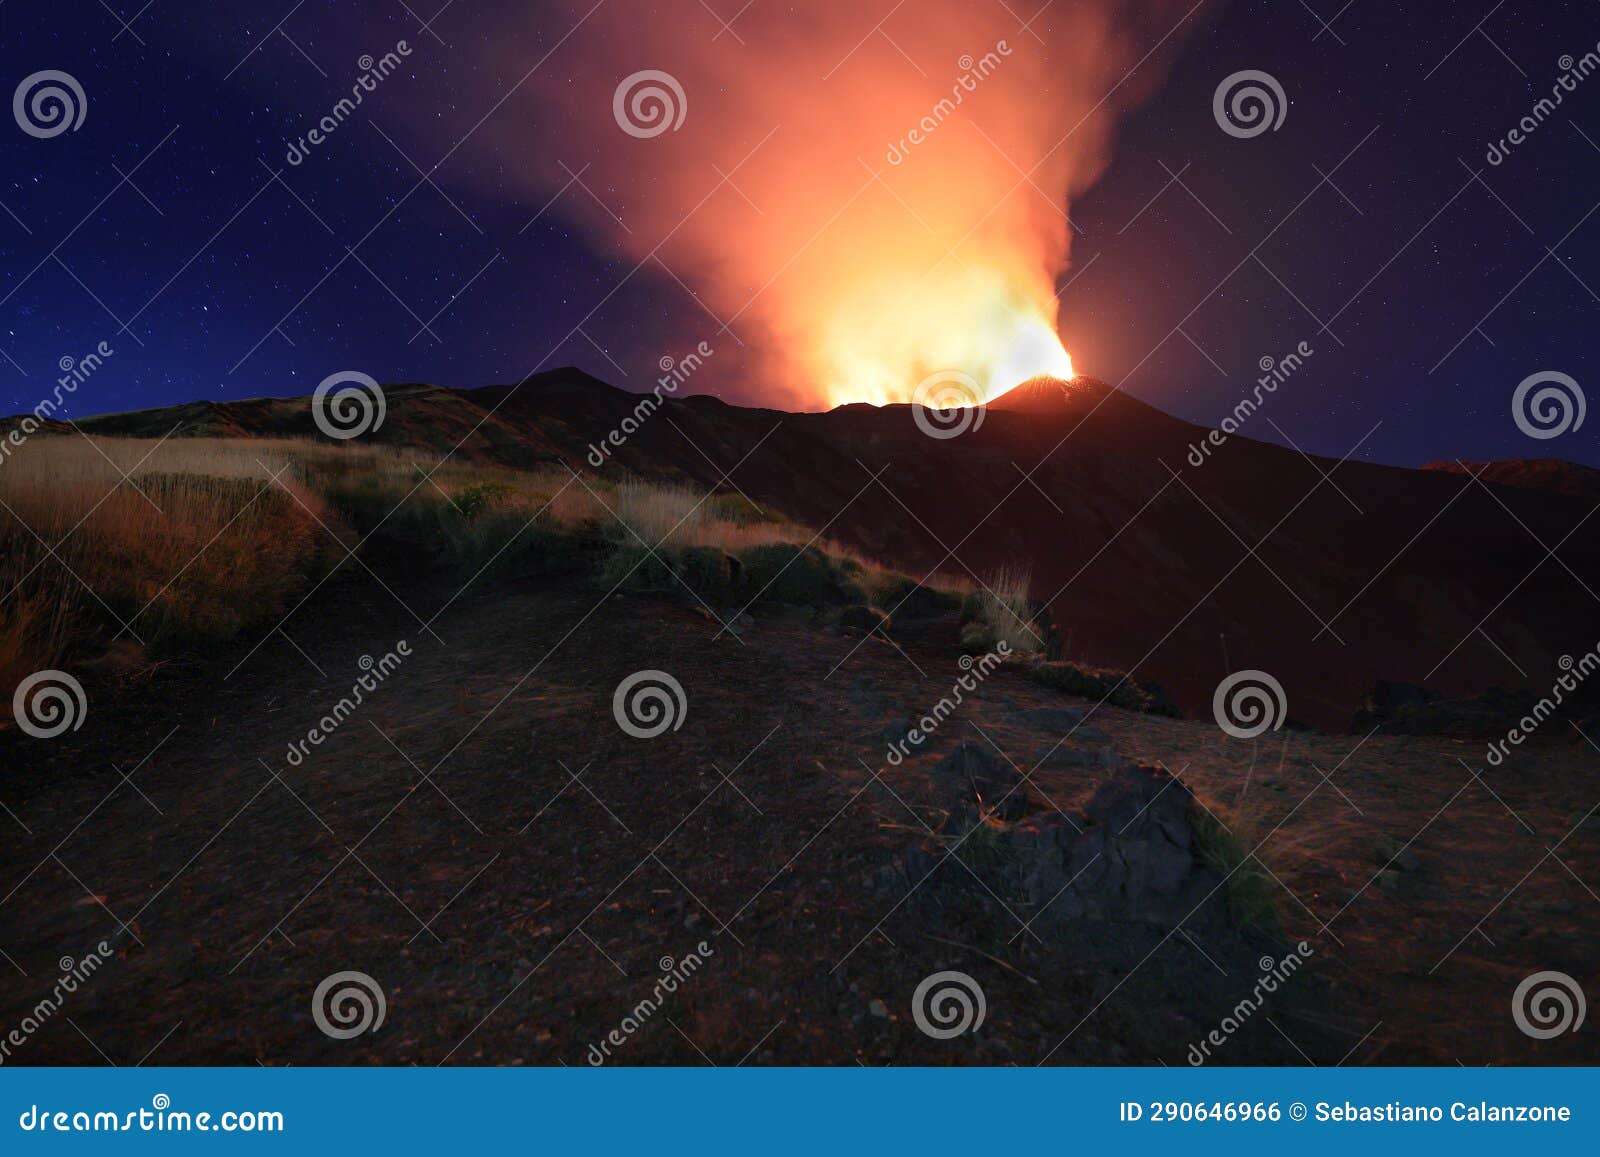 suggestiva eruzione del vulcano etna con esplosione di lava dalla cima del cratere con sfondo il cielo stellato e paesaggio